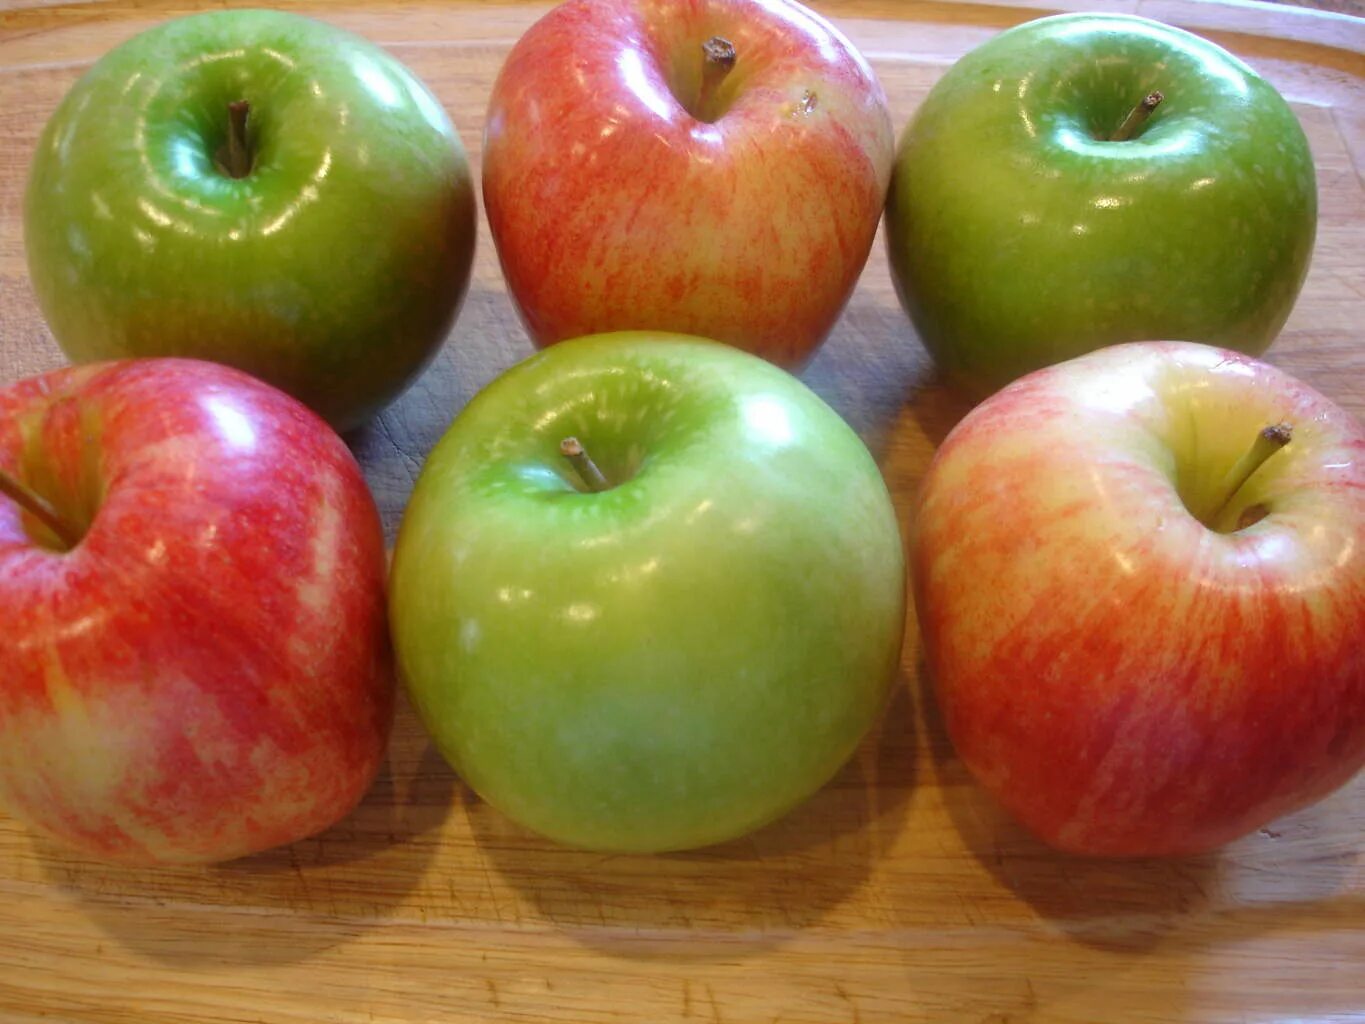 Яблоко 7 0 7 2. Шесть яблок. Семь яблок. Пять яблок. Яблоко лежит на столе.